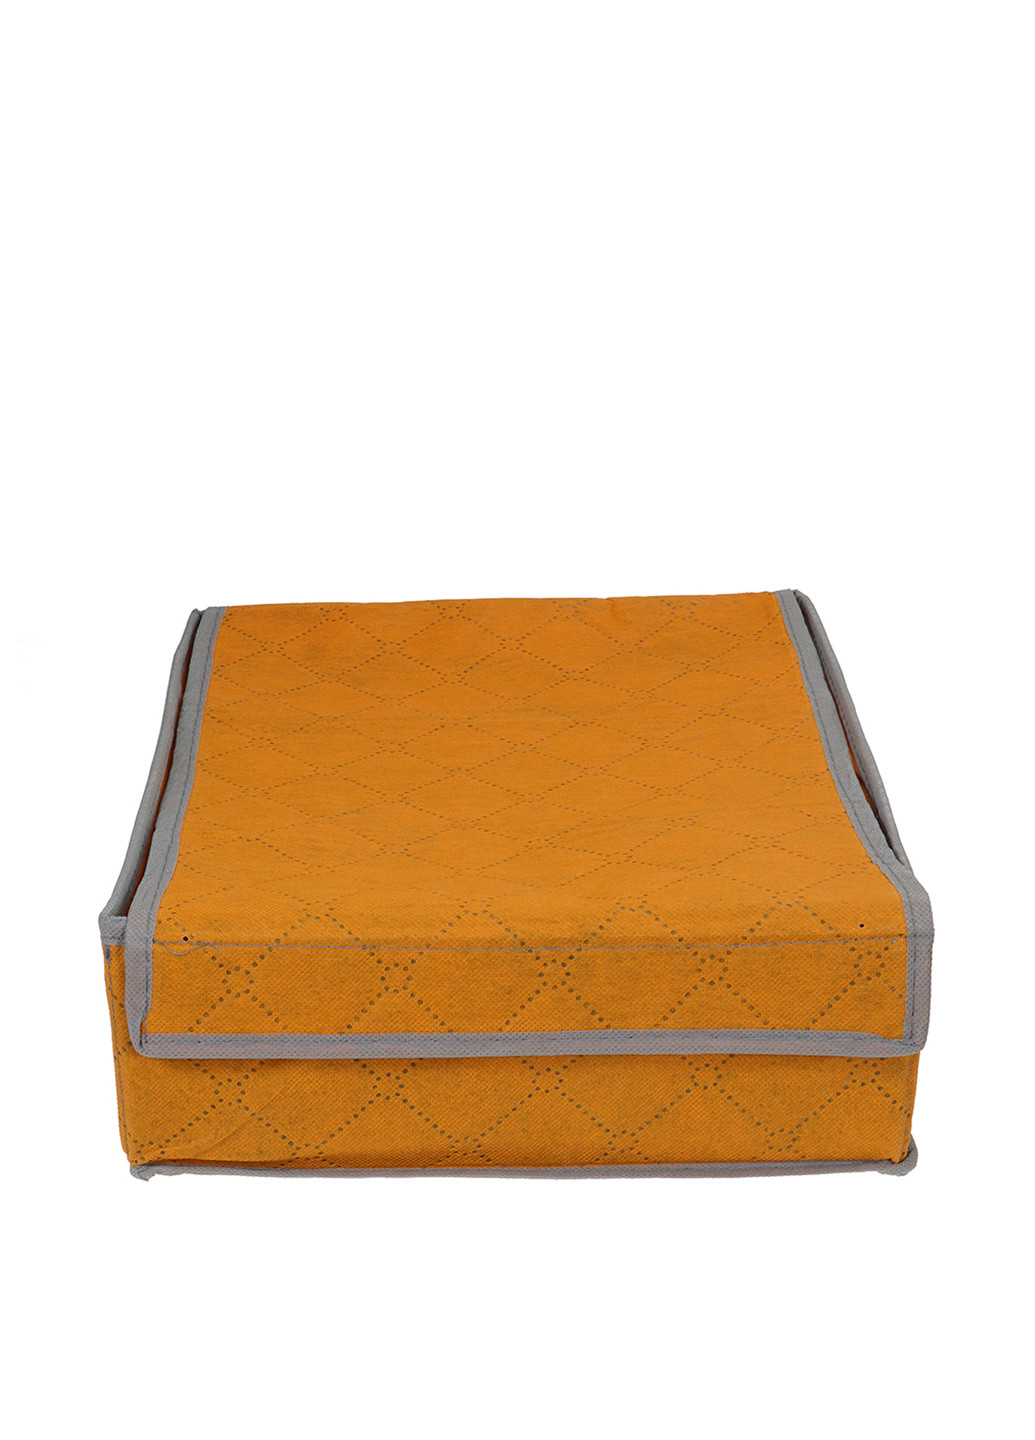 Органайзер с крышкой, 27х36х11 см TV-magazin геометрический оранжевый